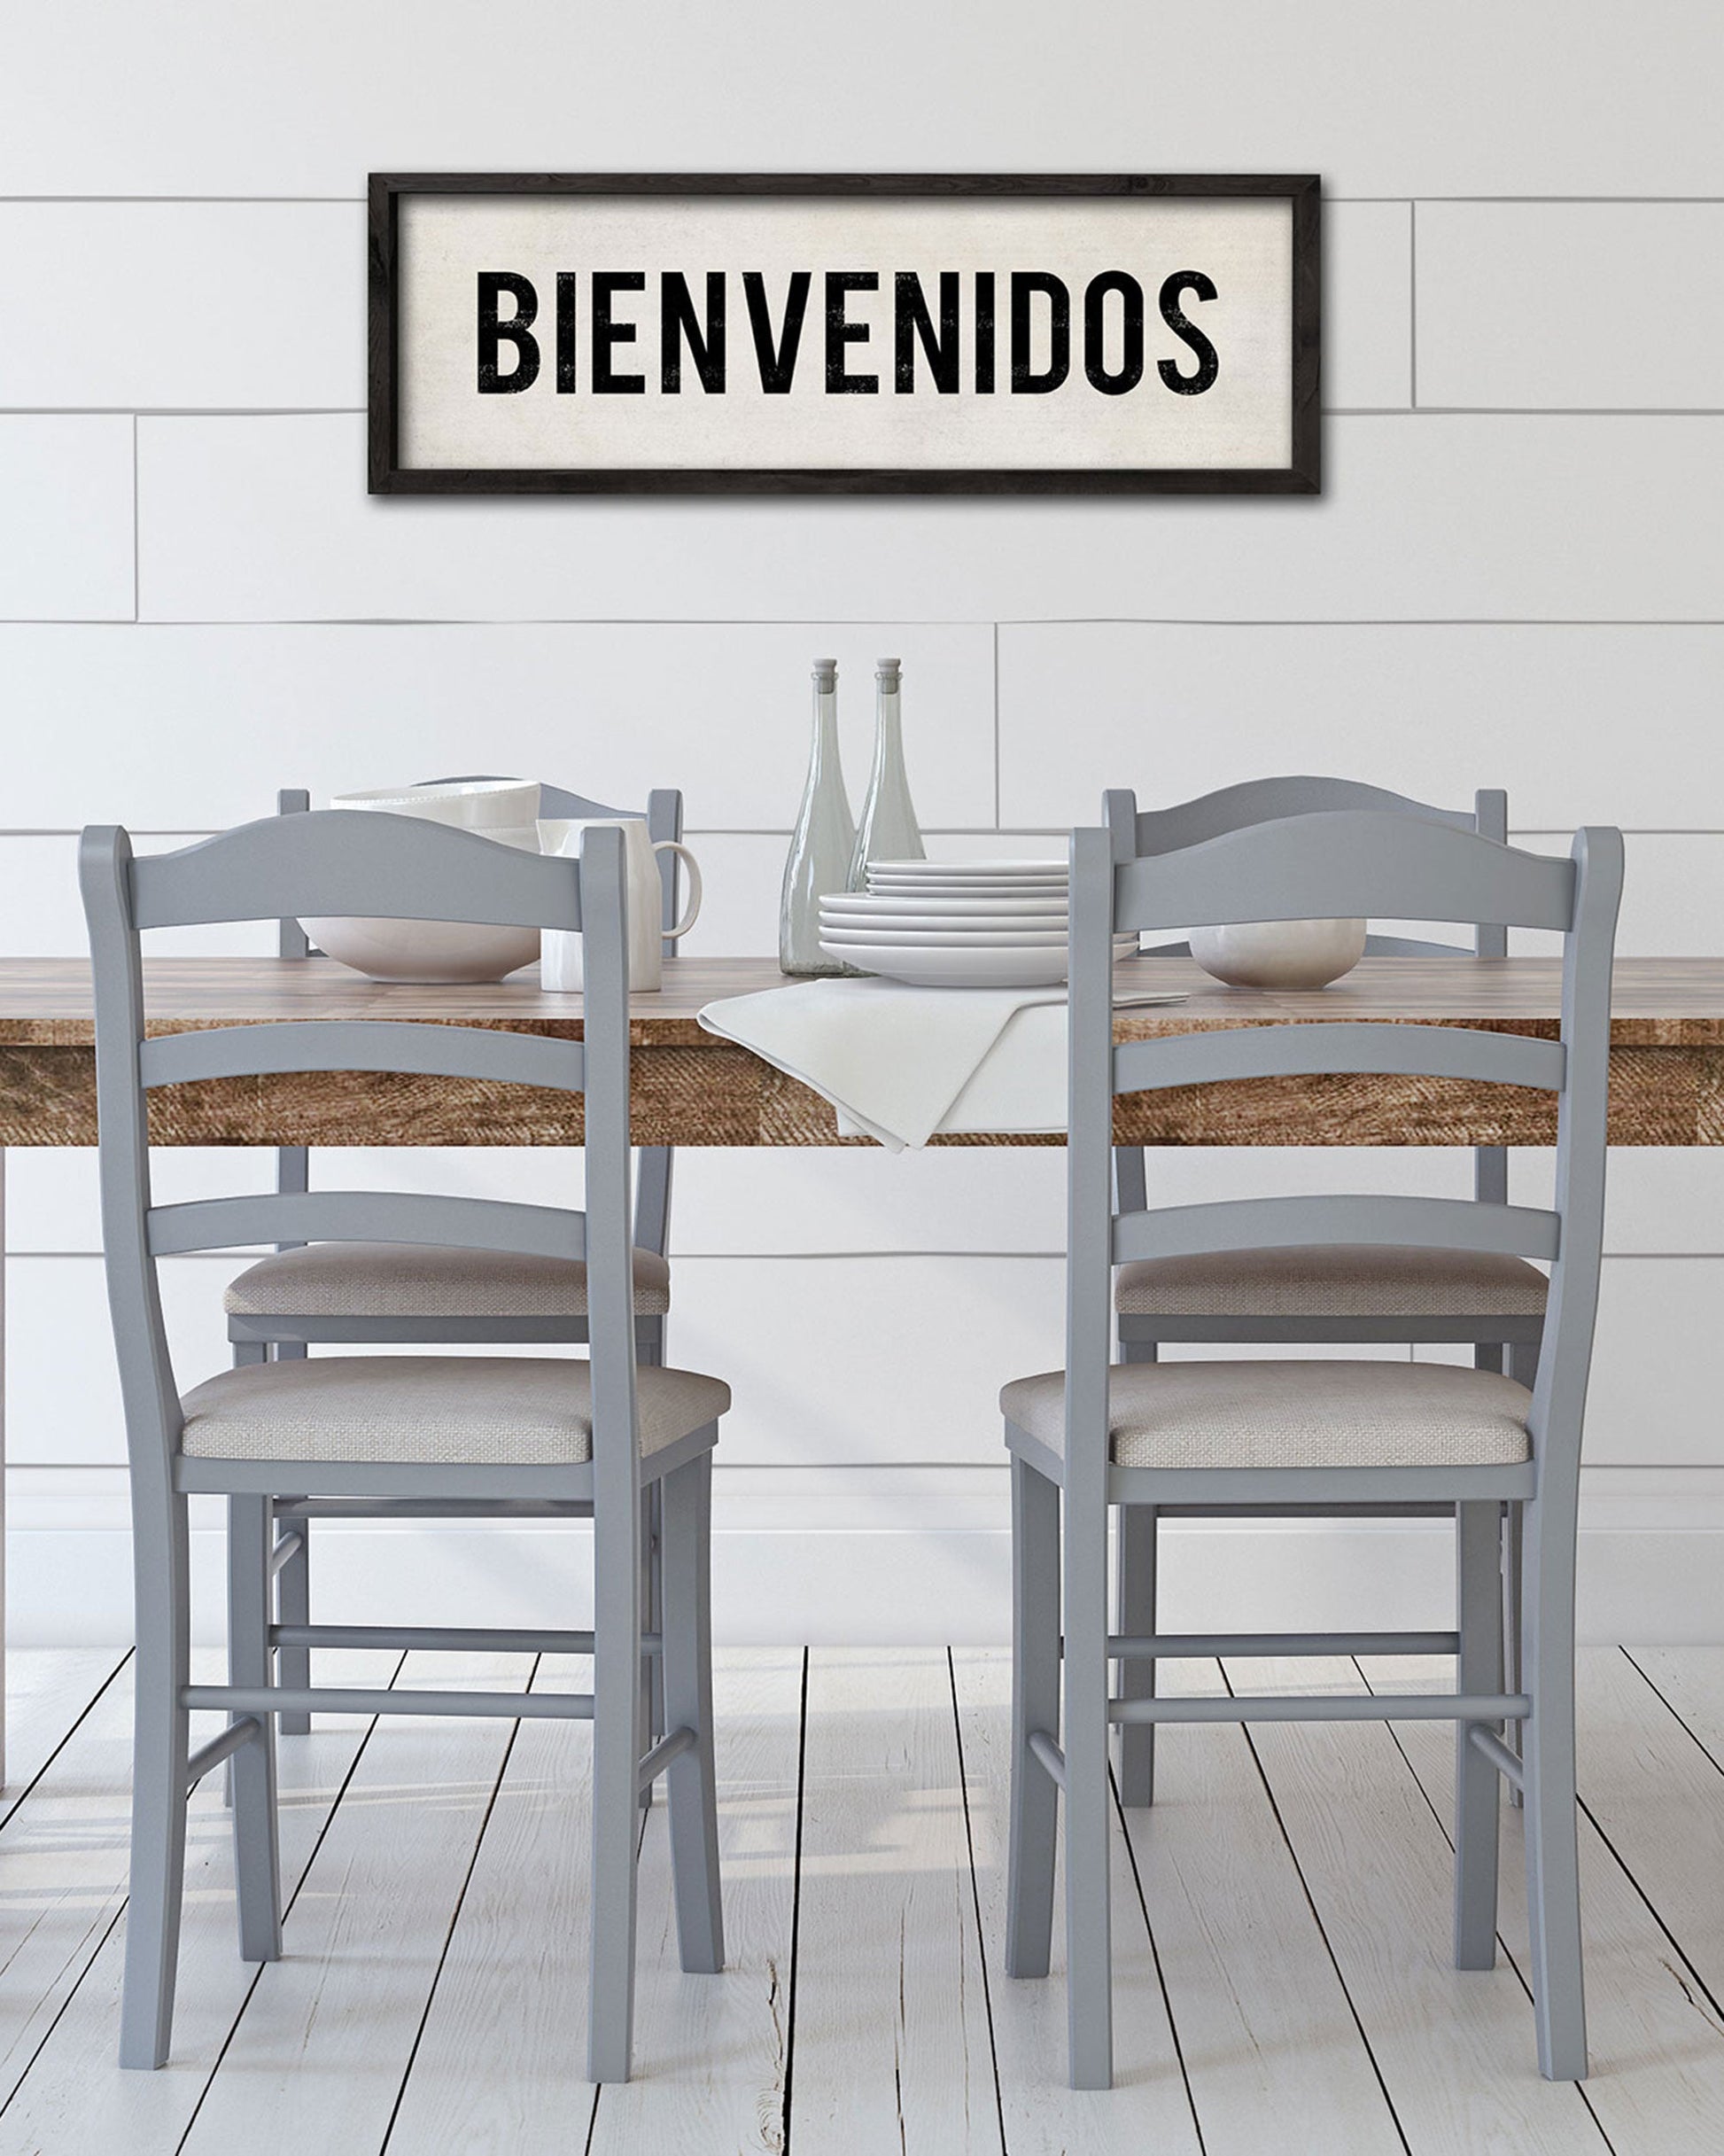 Bienvenidos Spanish Welcome Bienvenidos Sign Kitchen Decor -  Norway